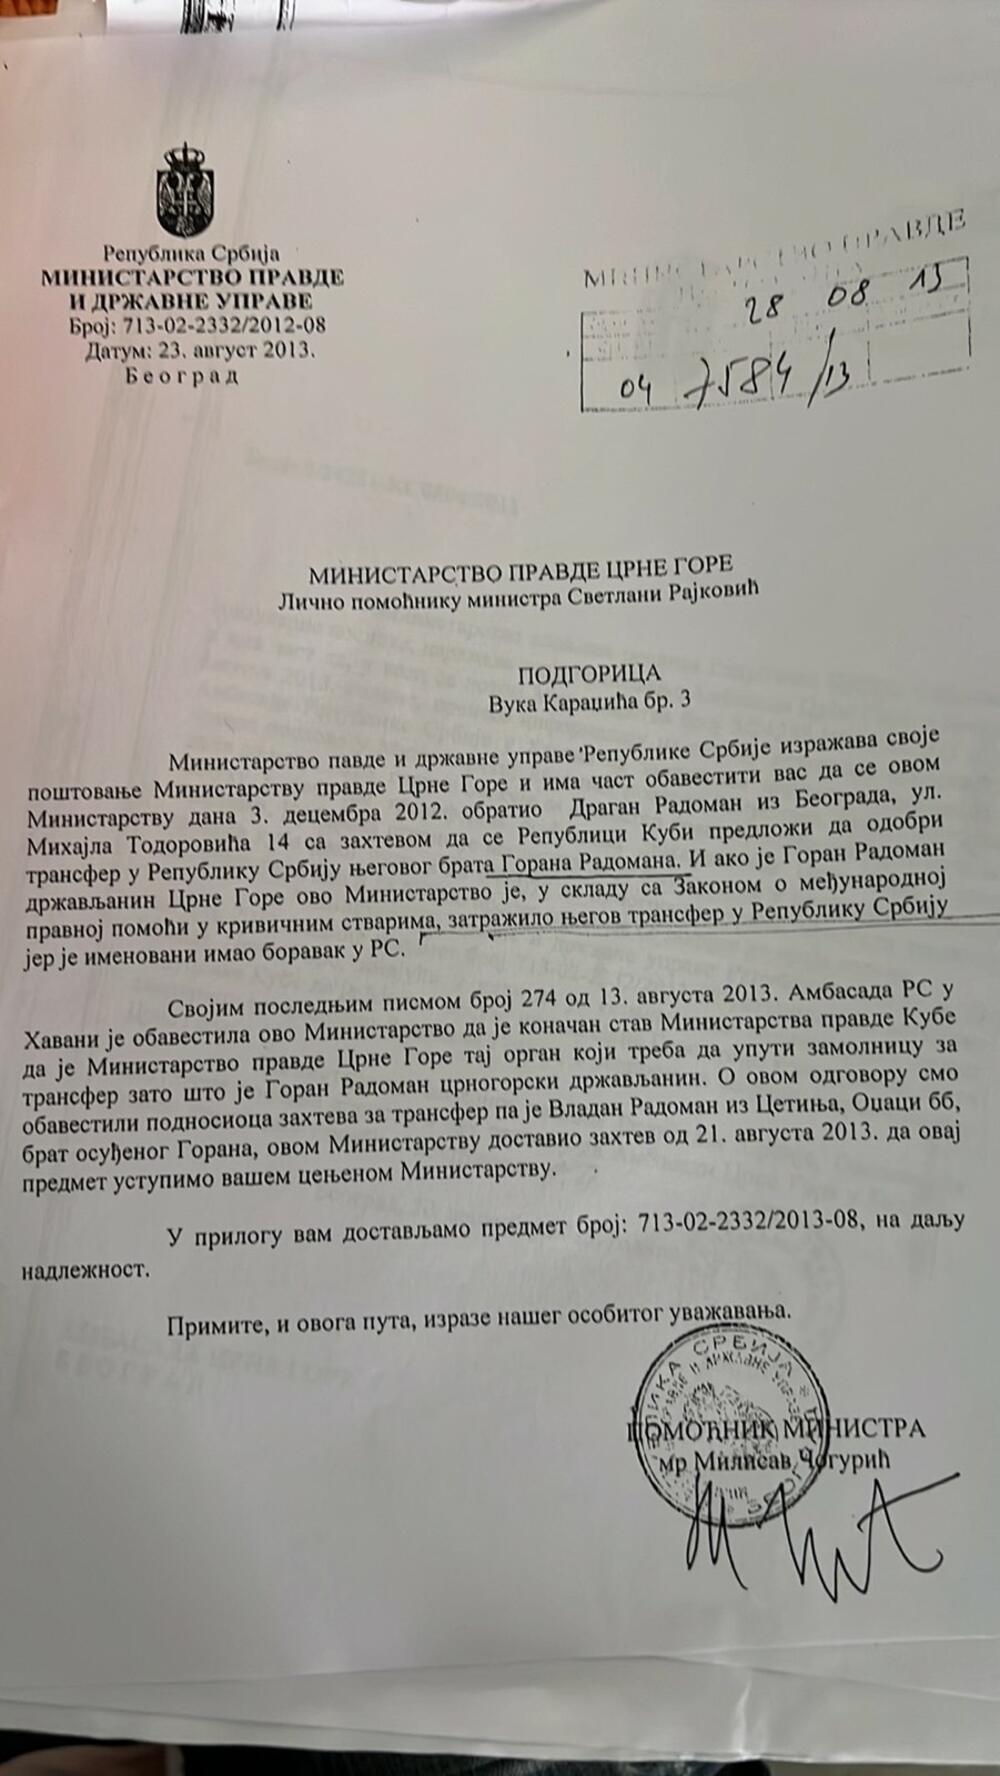 Dopis srbijanskog Ministarstva